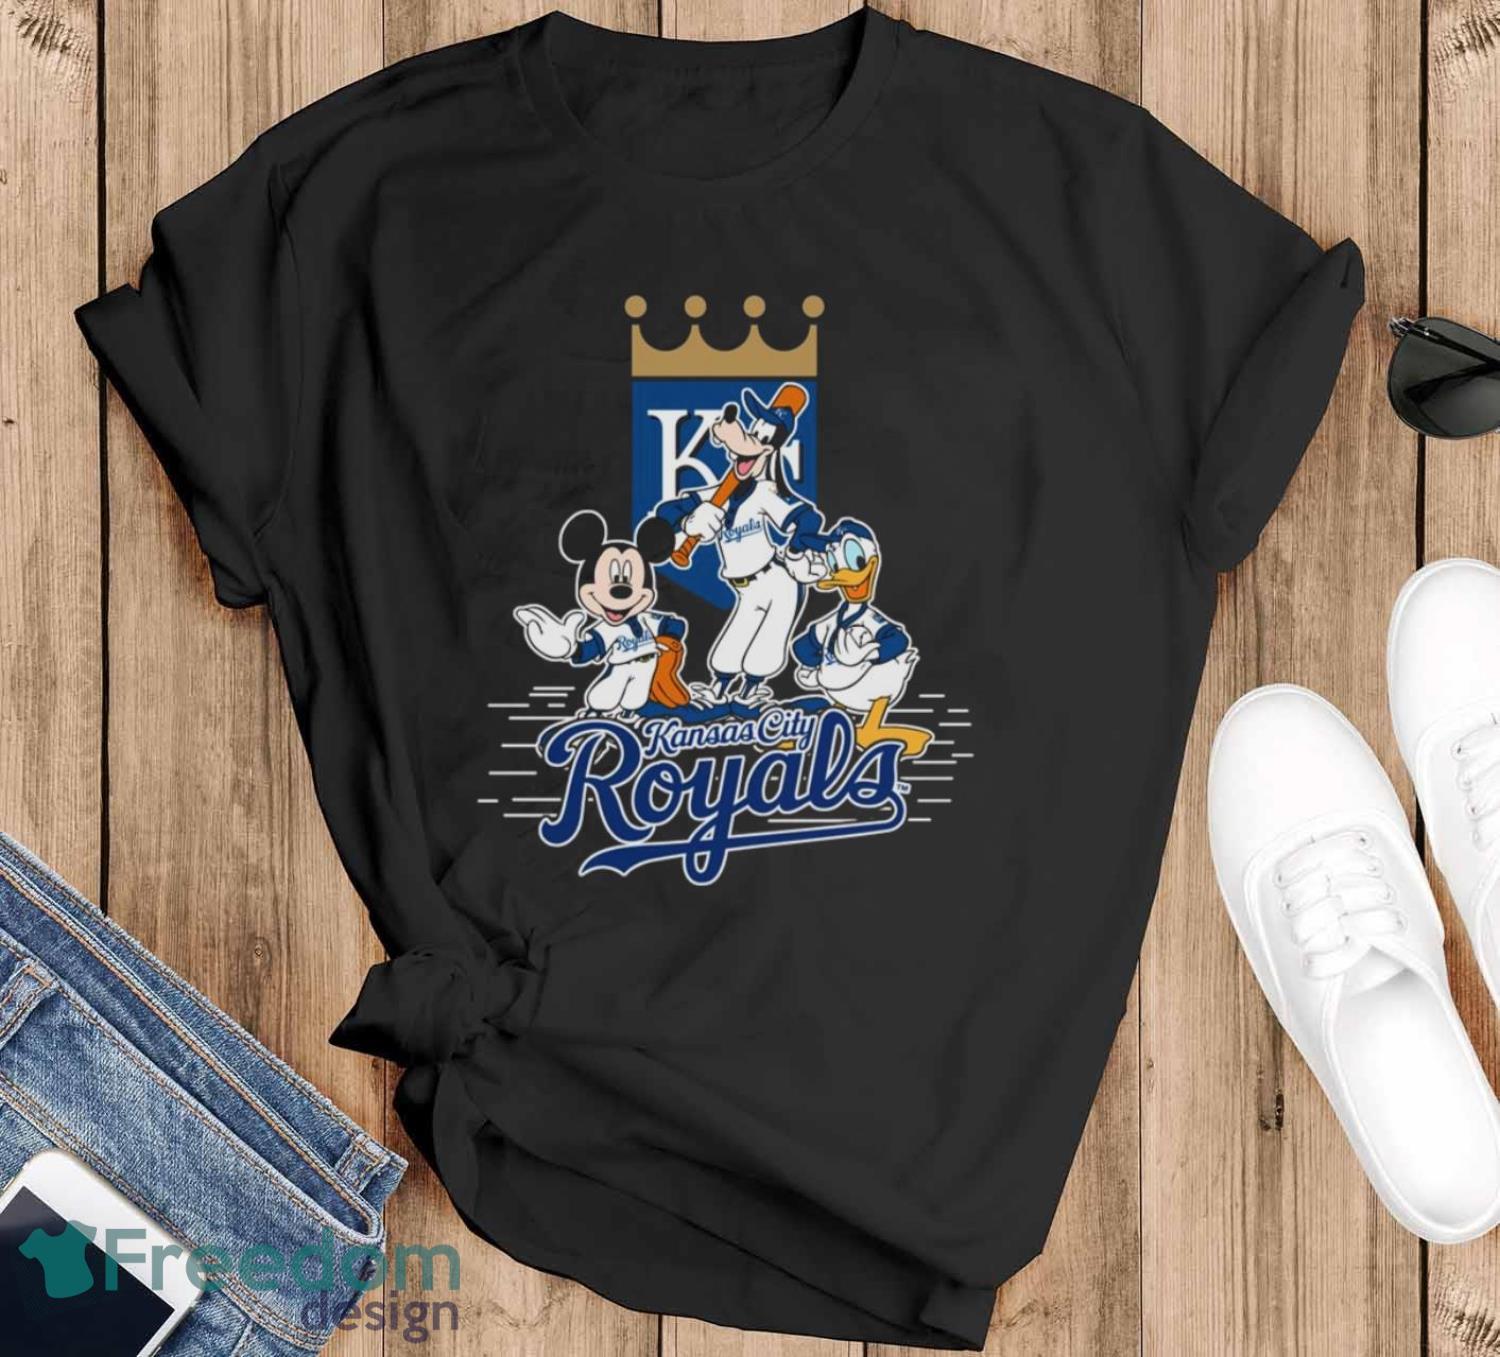 Kansas City Royals MLB Custom Name Hawaiian Shirt For Men Women Best Gift  For Fans - Freedomdesign